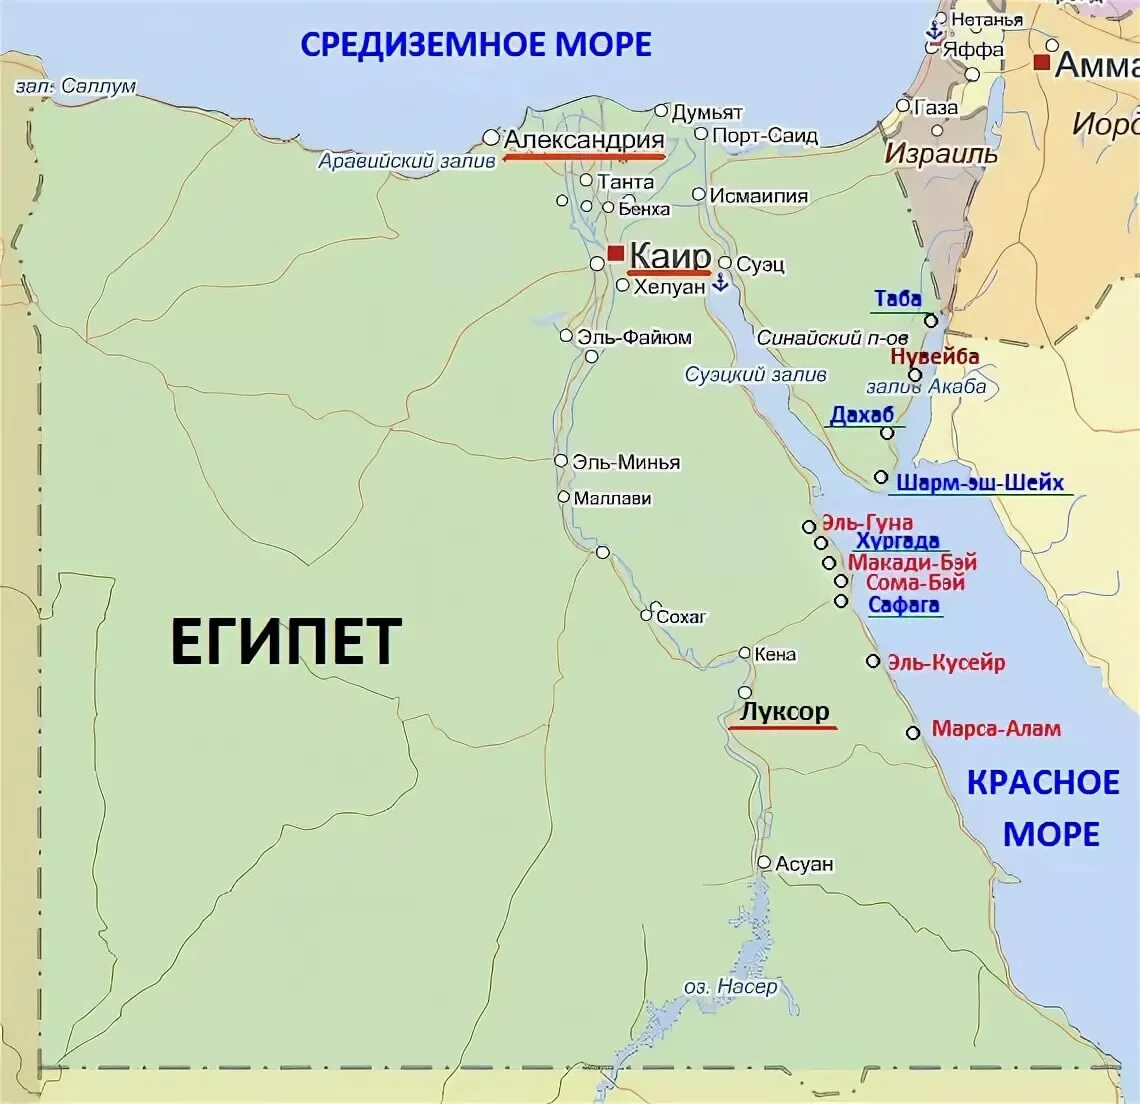 Код города египет. Курорты Египта на карте. Границы Египта на карте. Карта Египта на русском языке с городами и курортами. Карта Египта на русском с курортами.